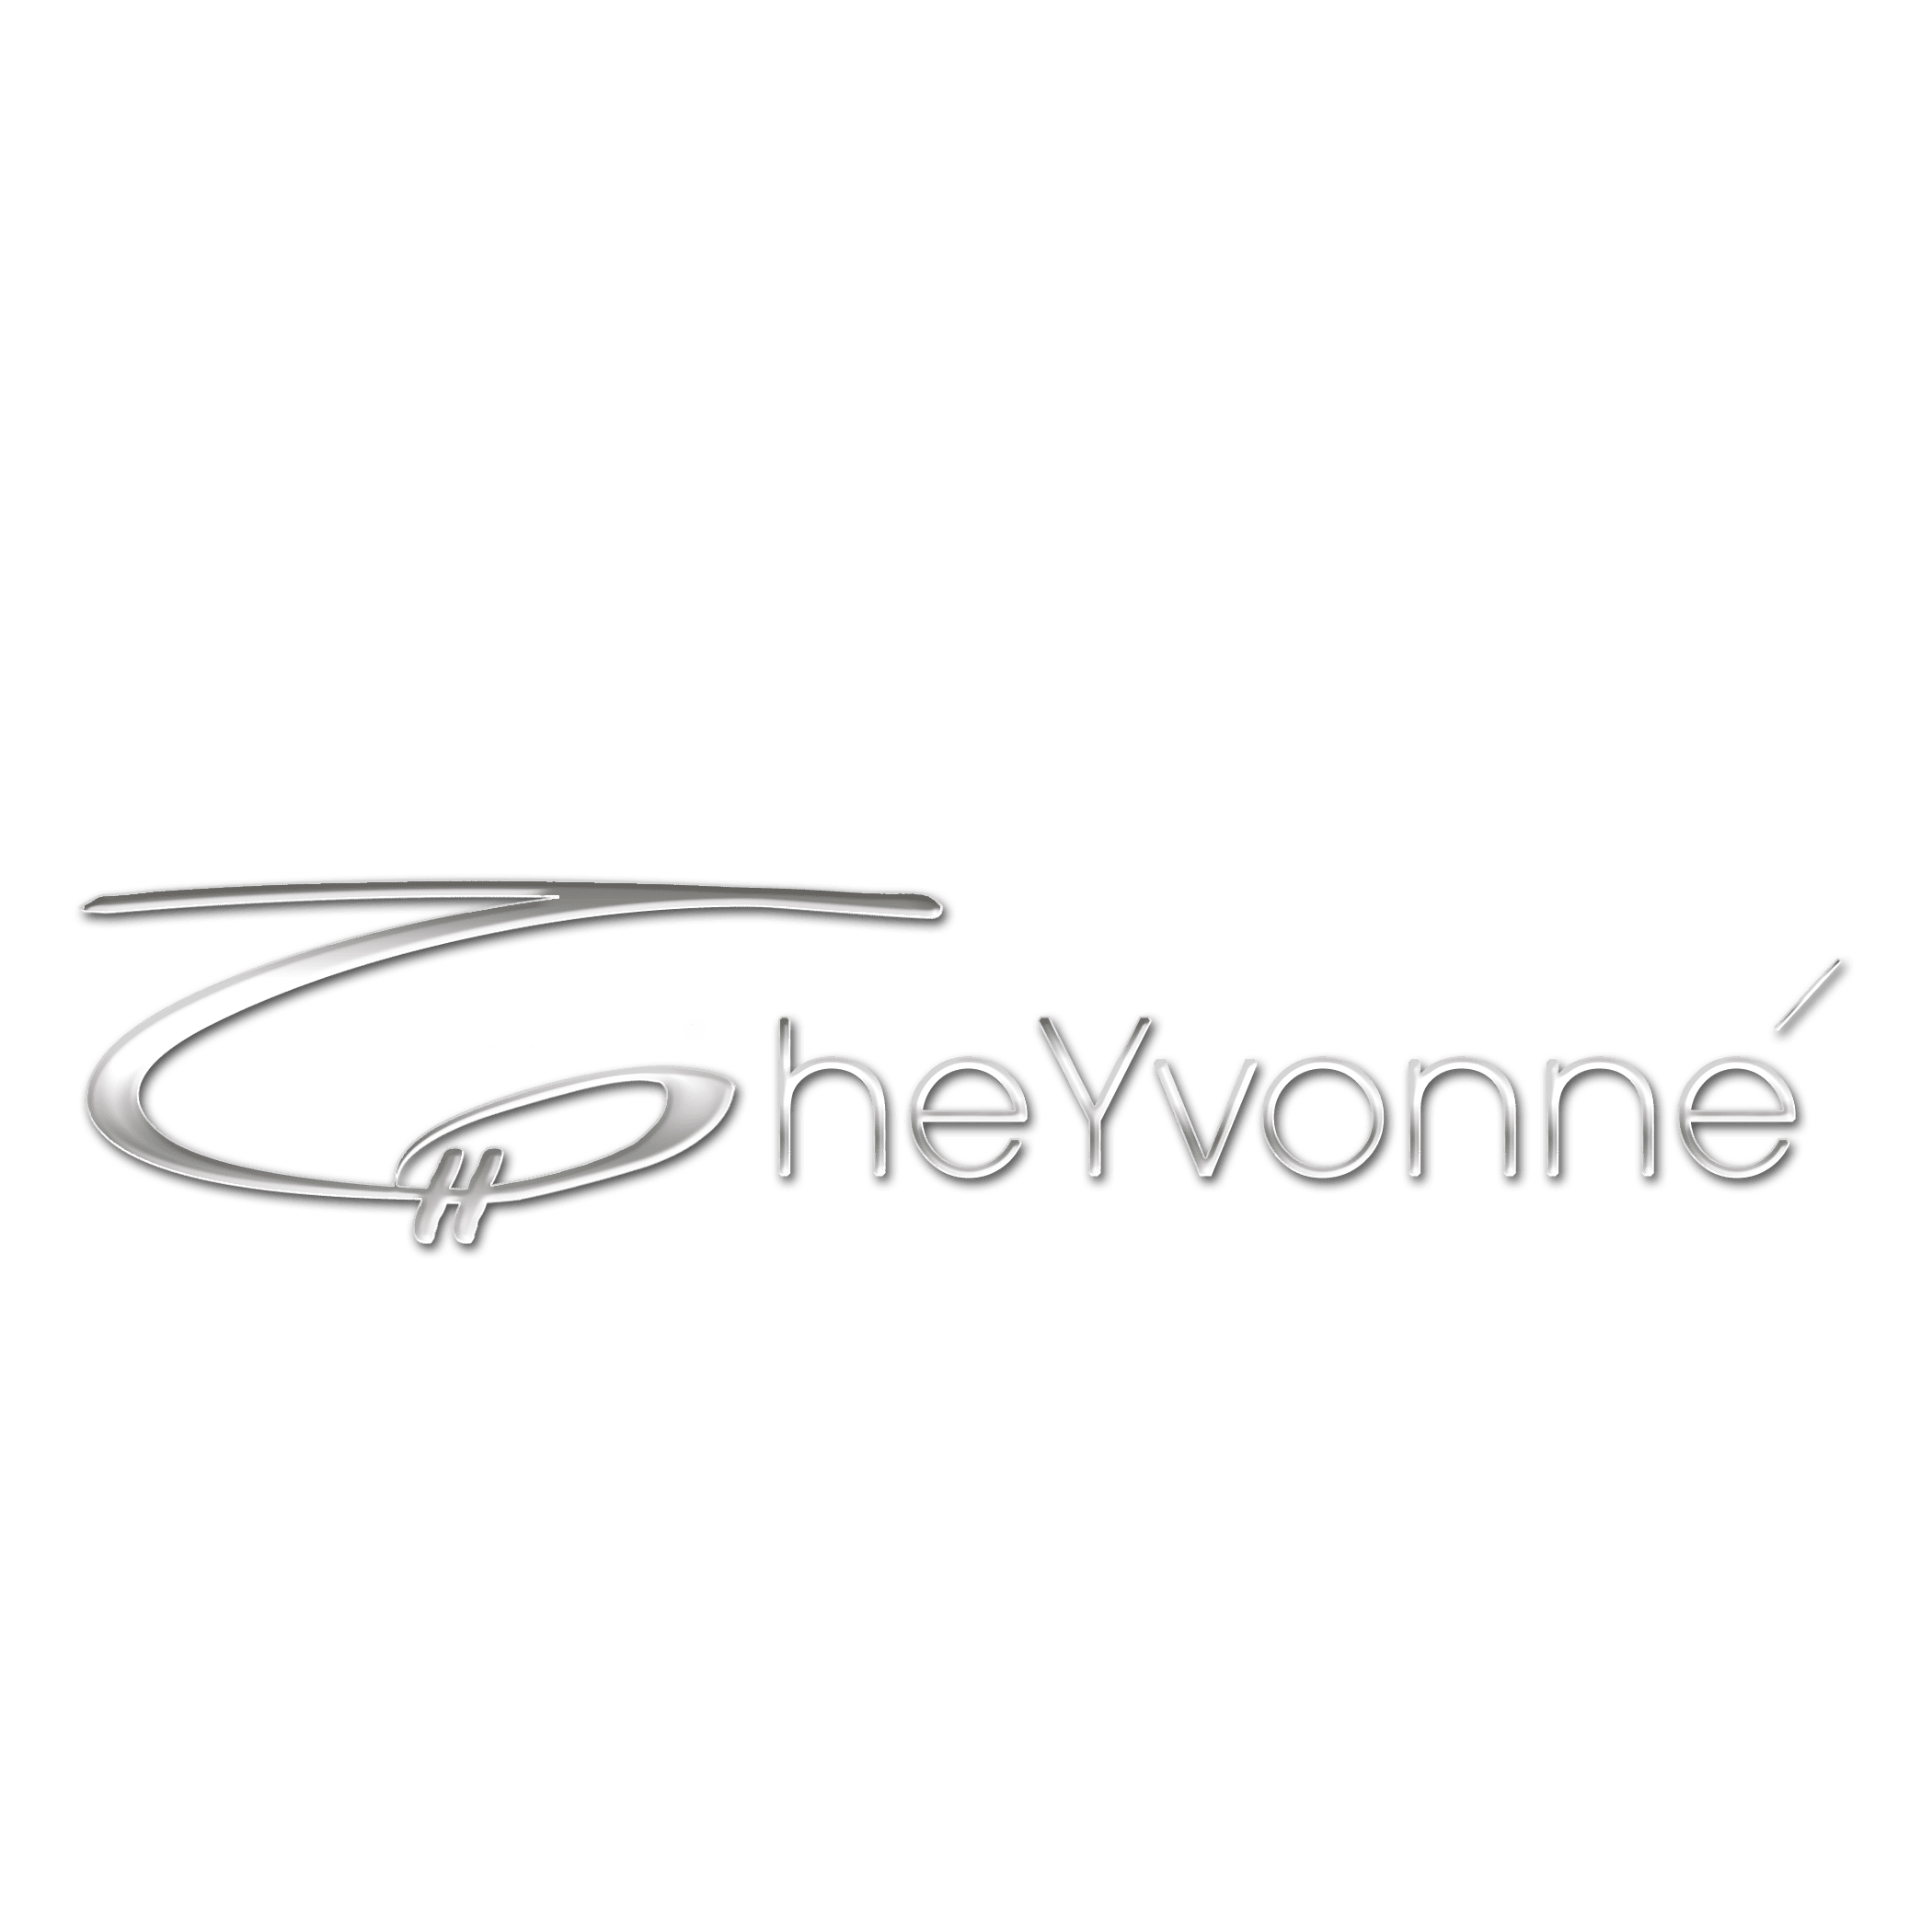 Cheyvonne